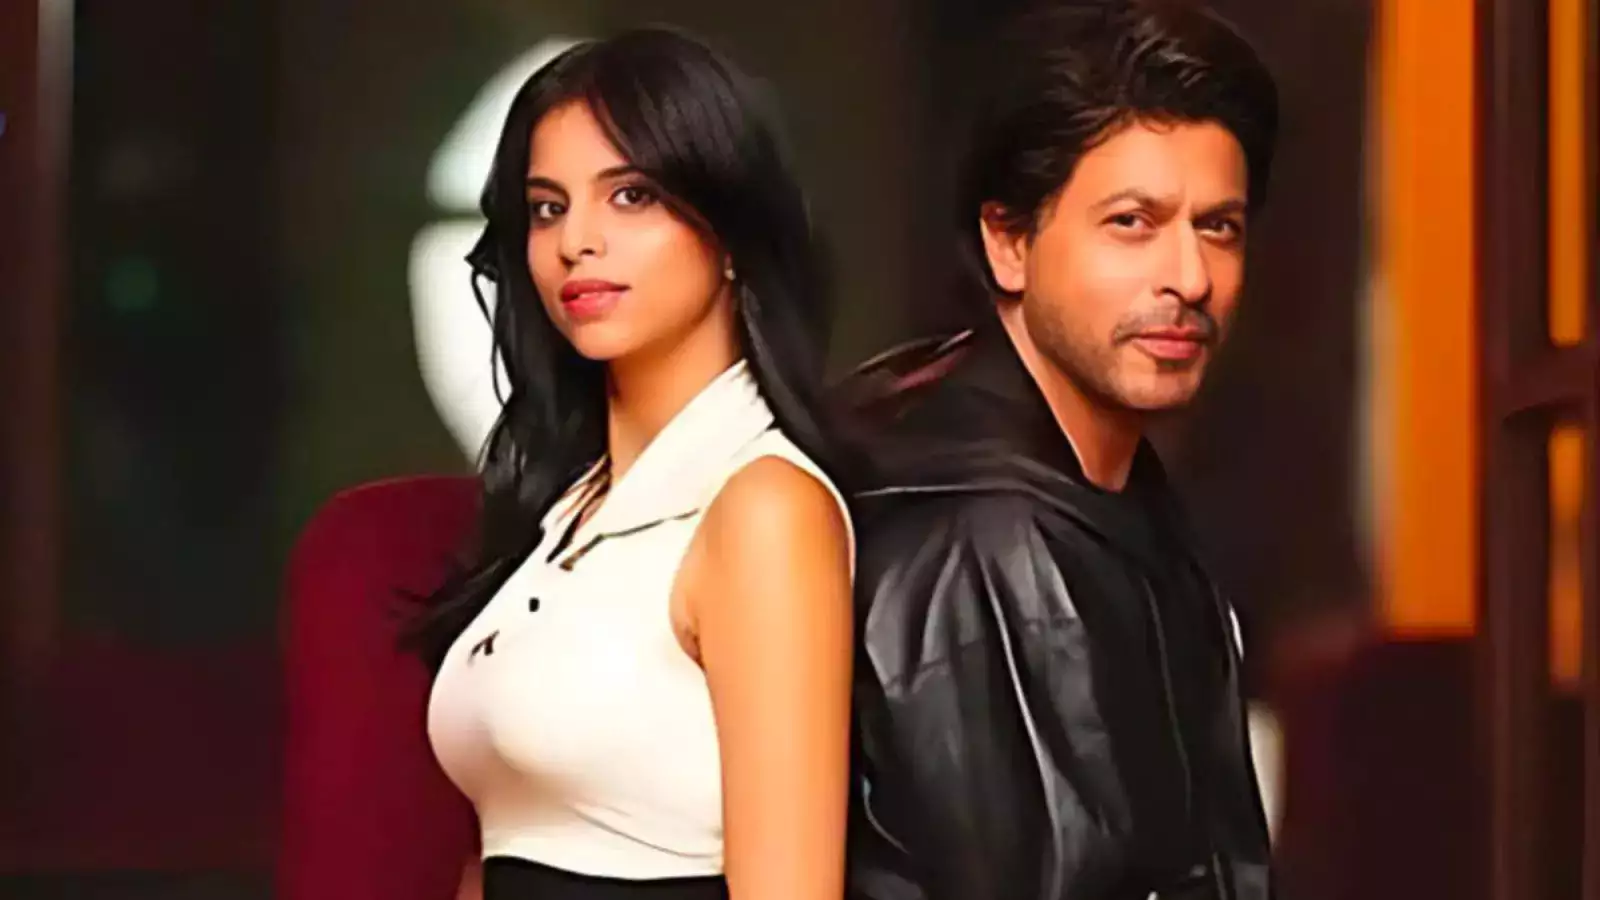 सुहाना खान की फिल्म किंग में नजर आयेंगे शाहरुख खान, डॉन बन बिखेरेंगे जलवा